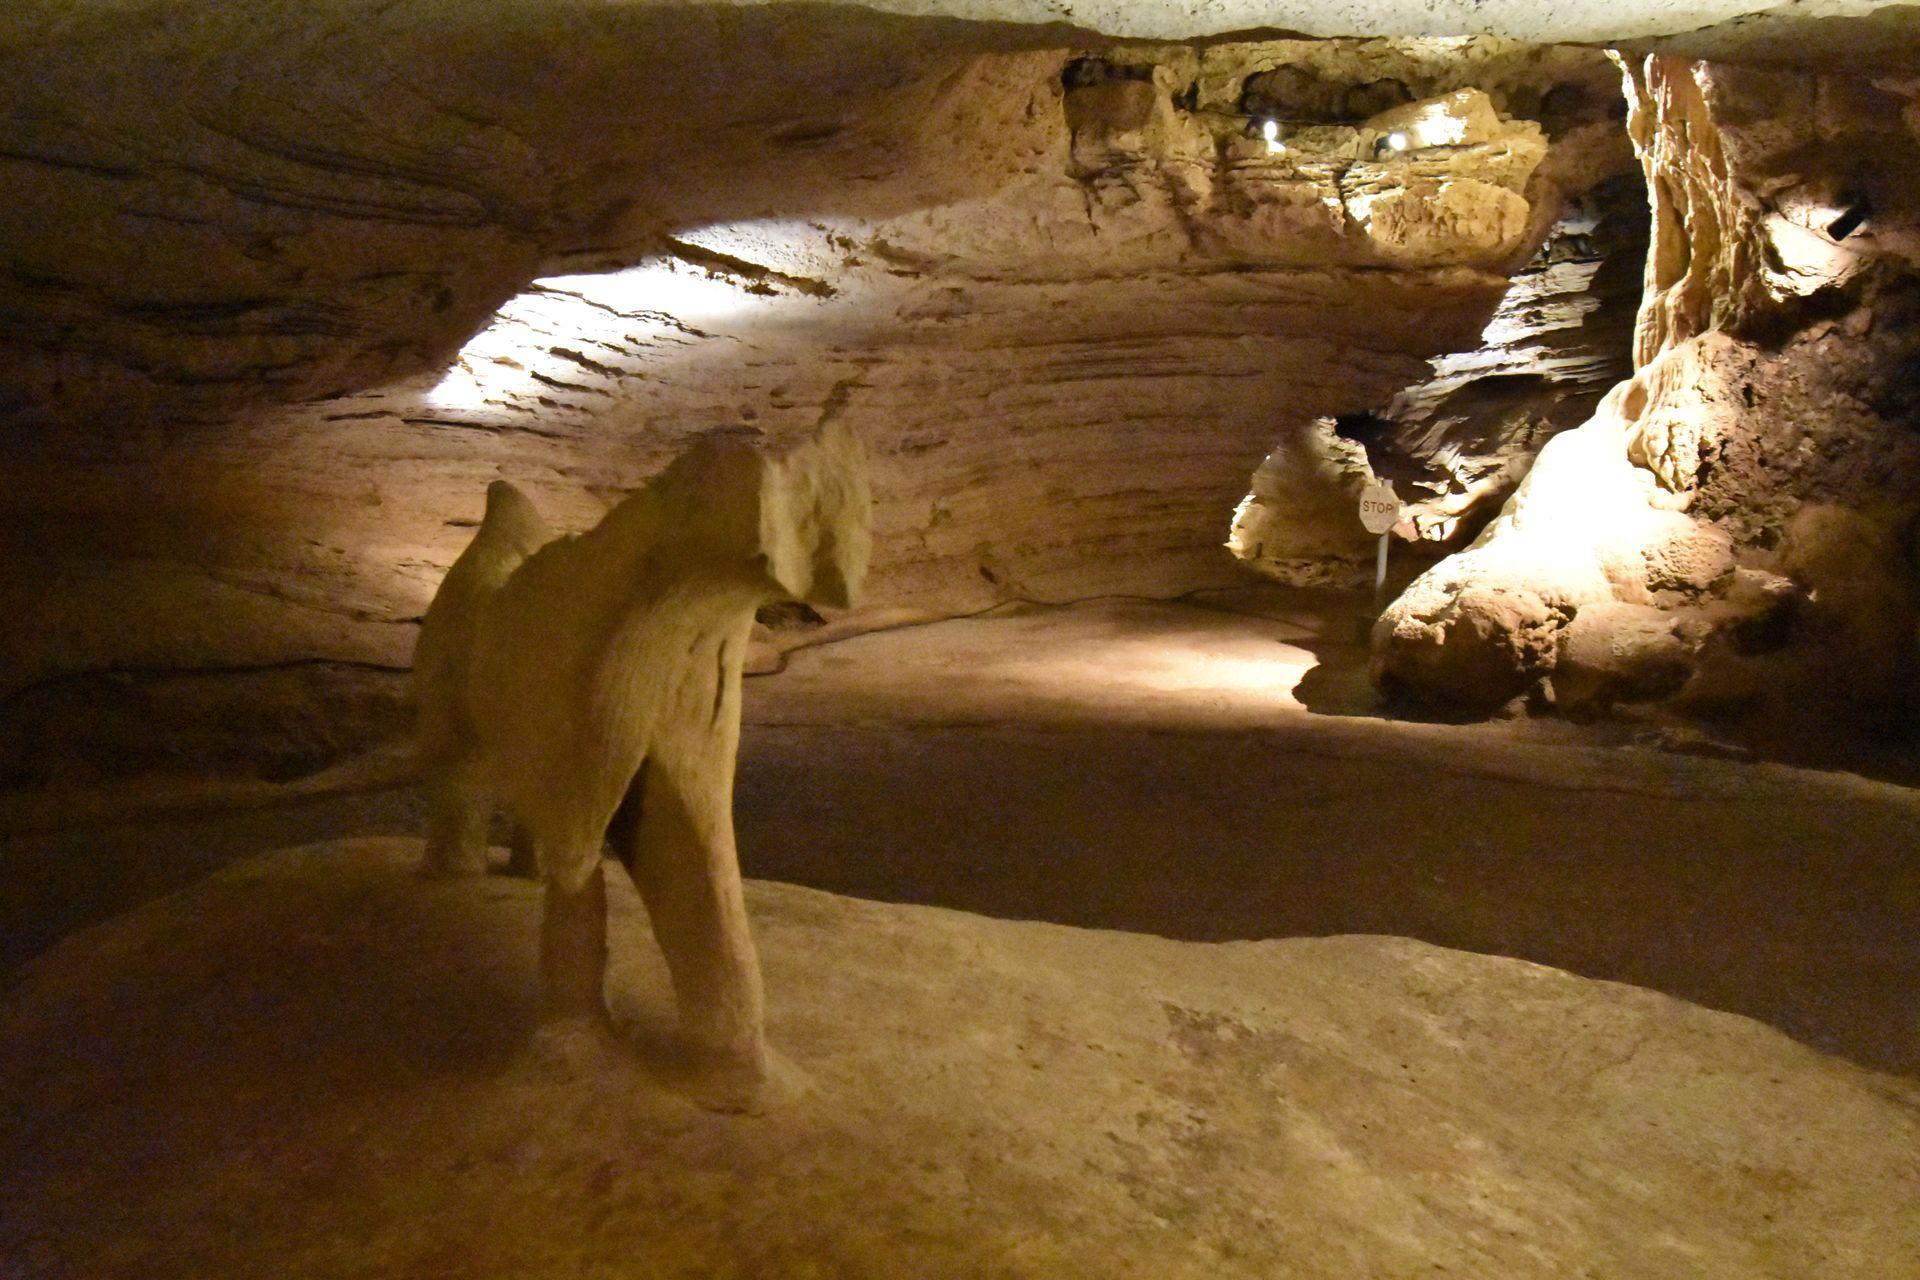 The dog rock formation inside of Longhorn Caverns.